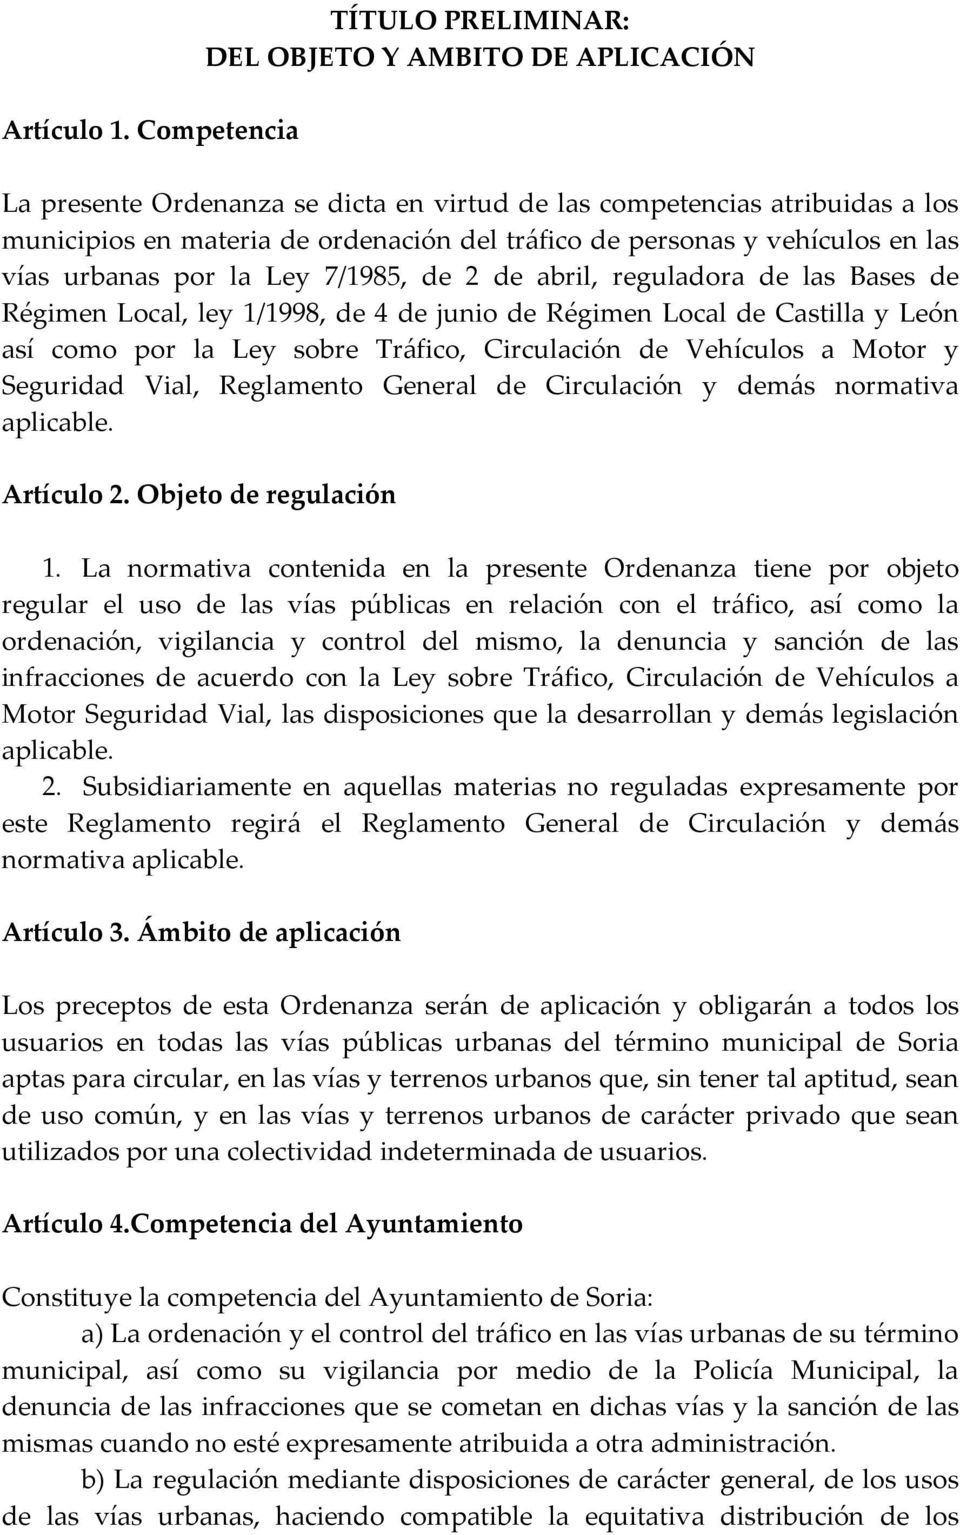 personas y vehículos en las vías urbanas por la Ley 7/1985, de 2 de abril, reguladora de las Bases de Régimen Local, ley 1/1998, de 4 de junio de Régimen Local de Castilla y León así como por la Ley